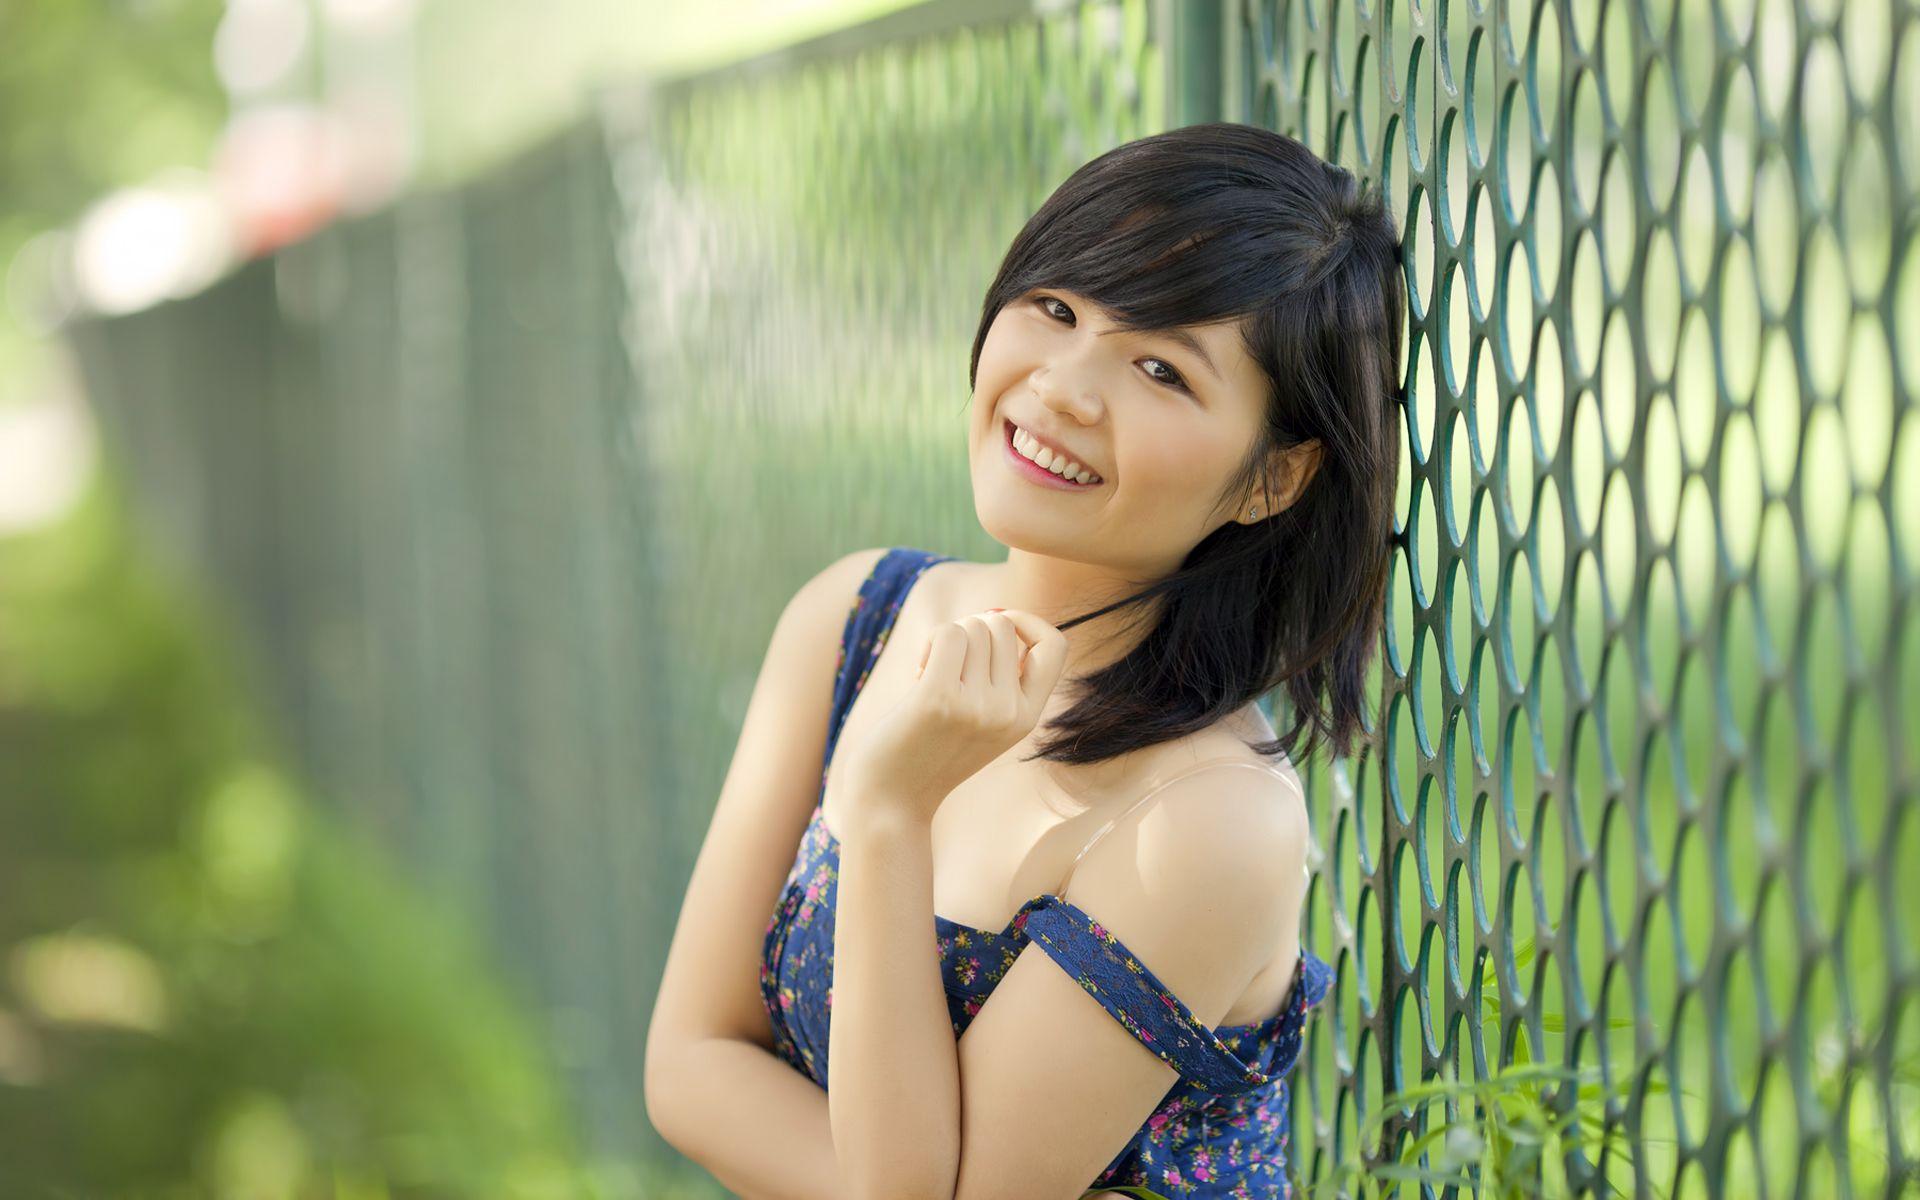 Cute And Beautiful Asian Girls Wallpaper Full HD